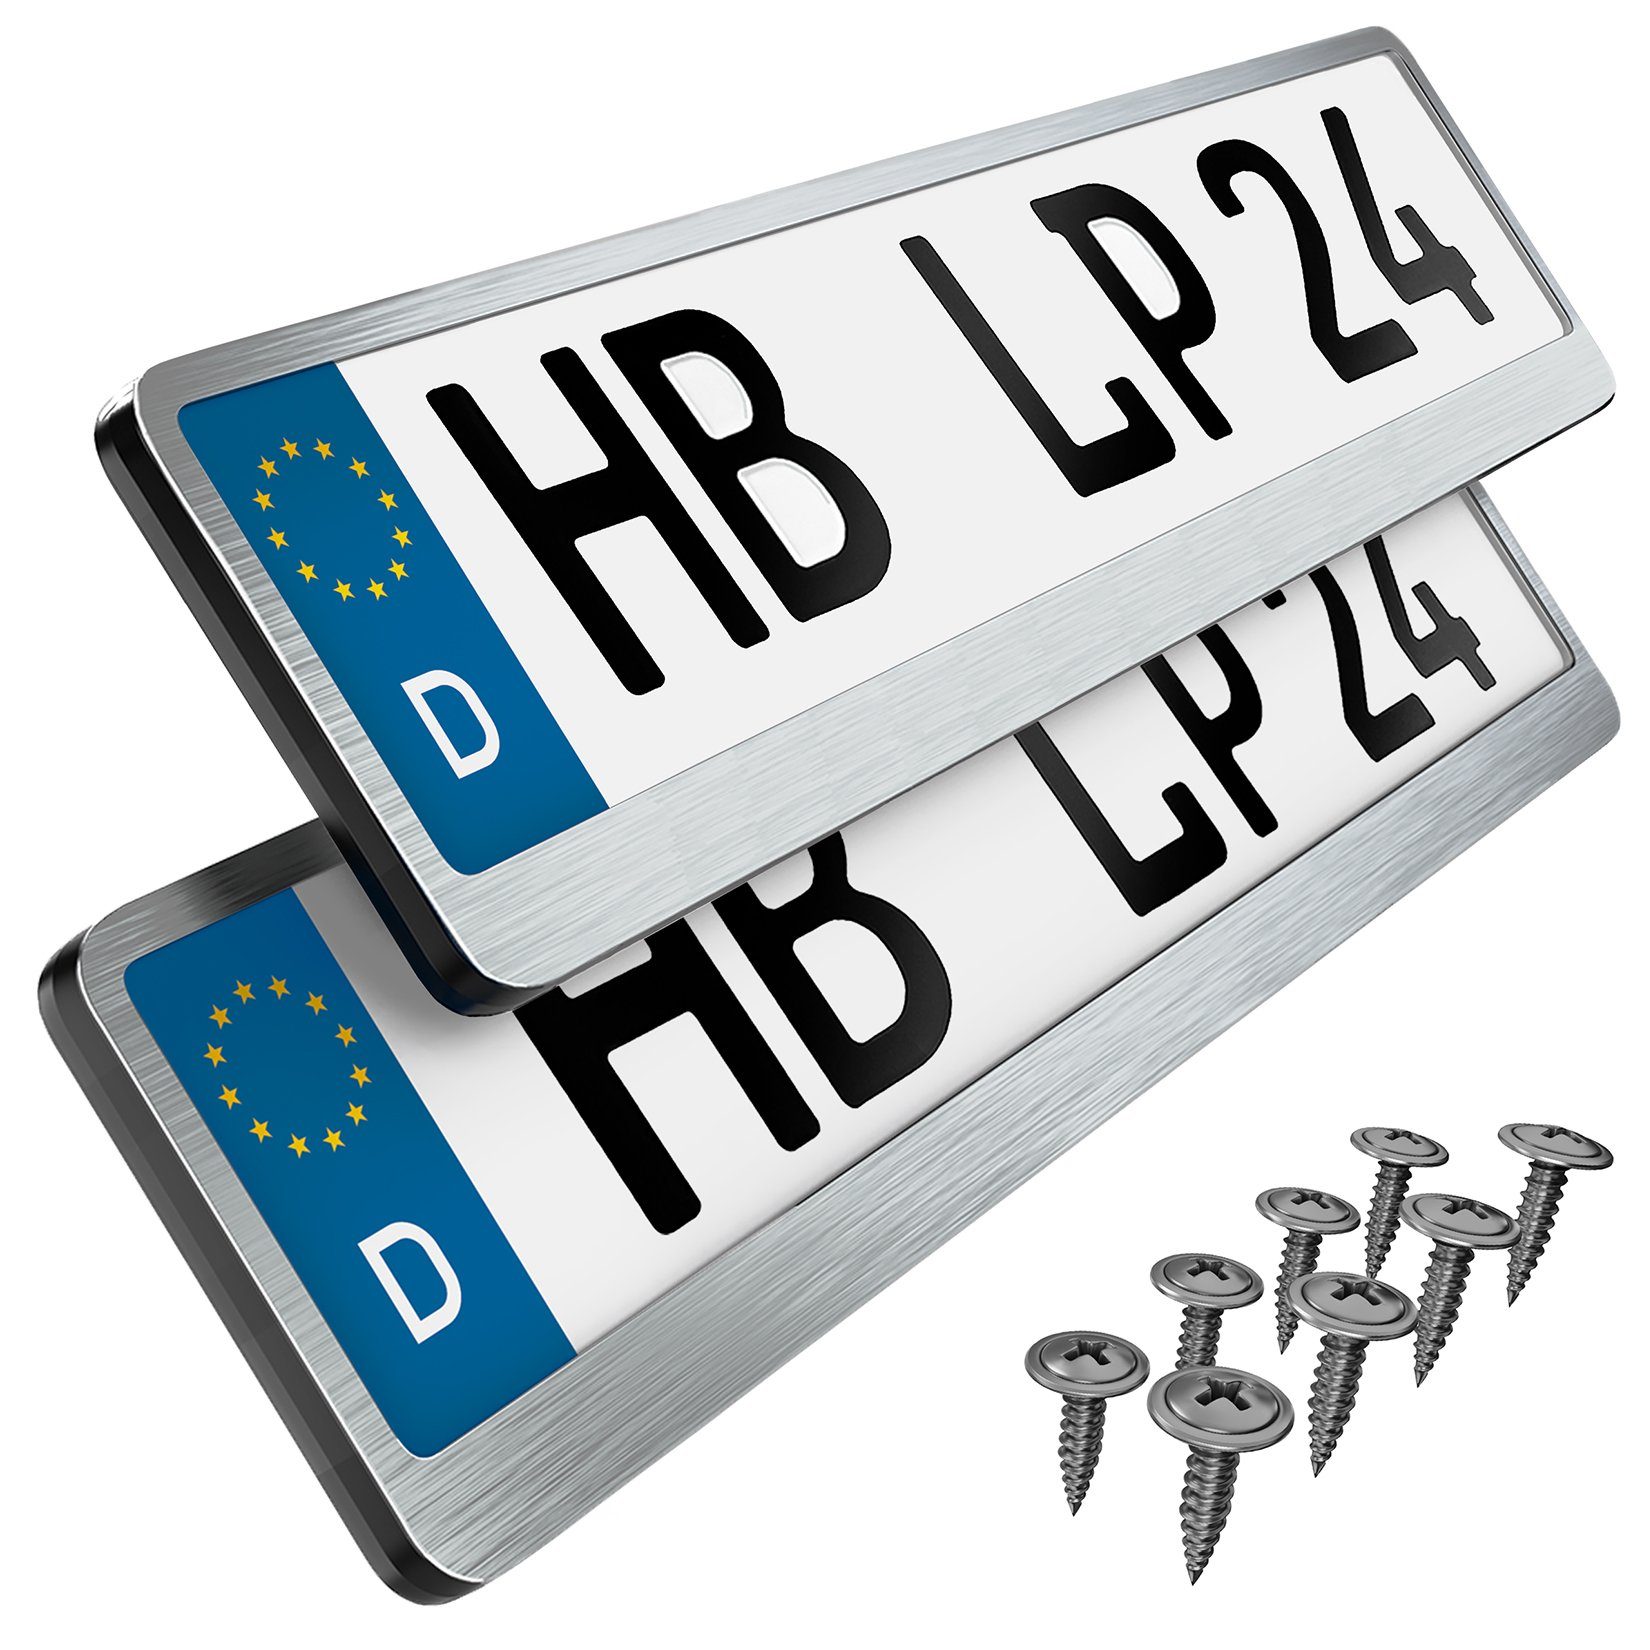 L & P Car Design Kennzeichenhalter für Auto Edelstahl gebürstet Premium Kennzeichenhalter V2A, (2 Stück)